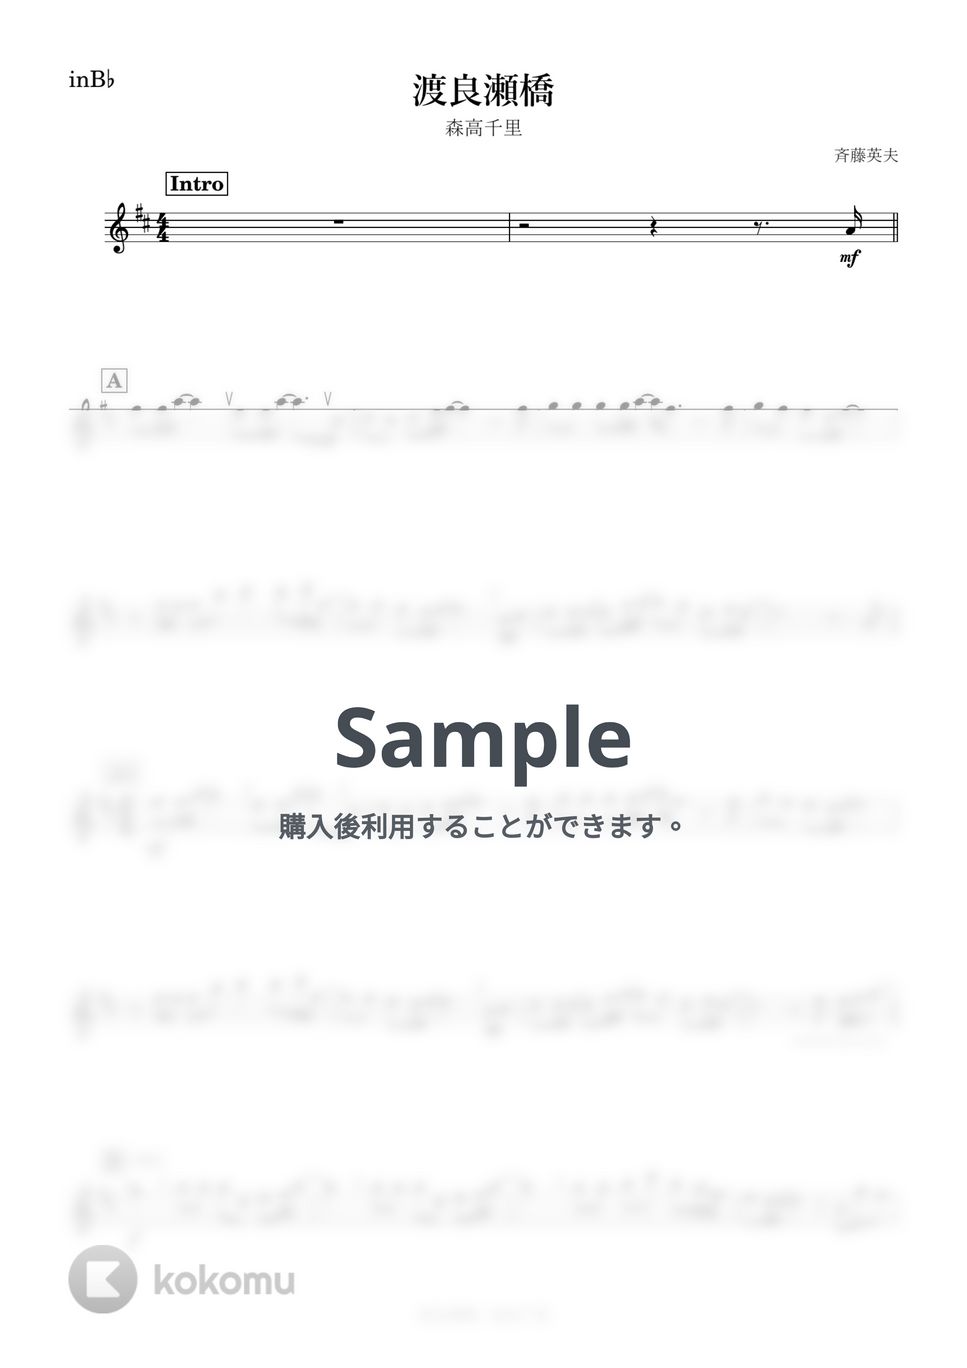 森高千里 - 渡良瀬橋 (B♭) by kanamusic